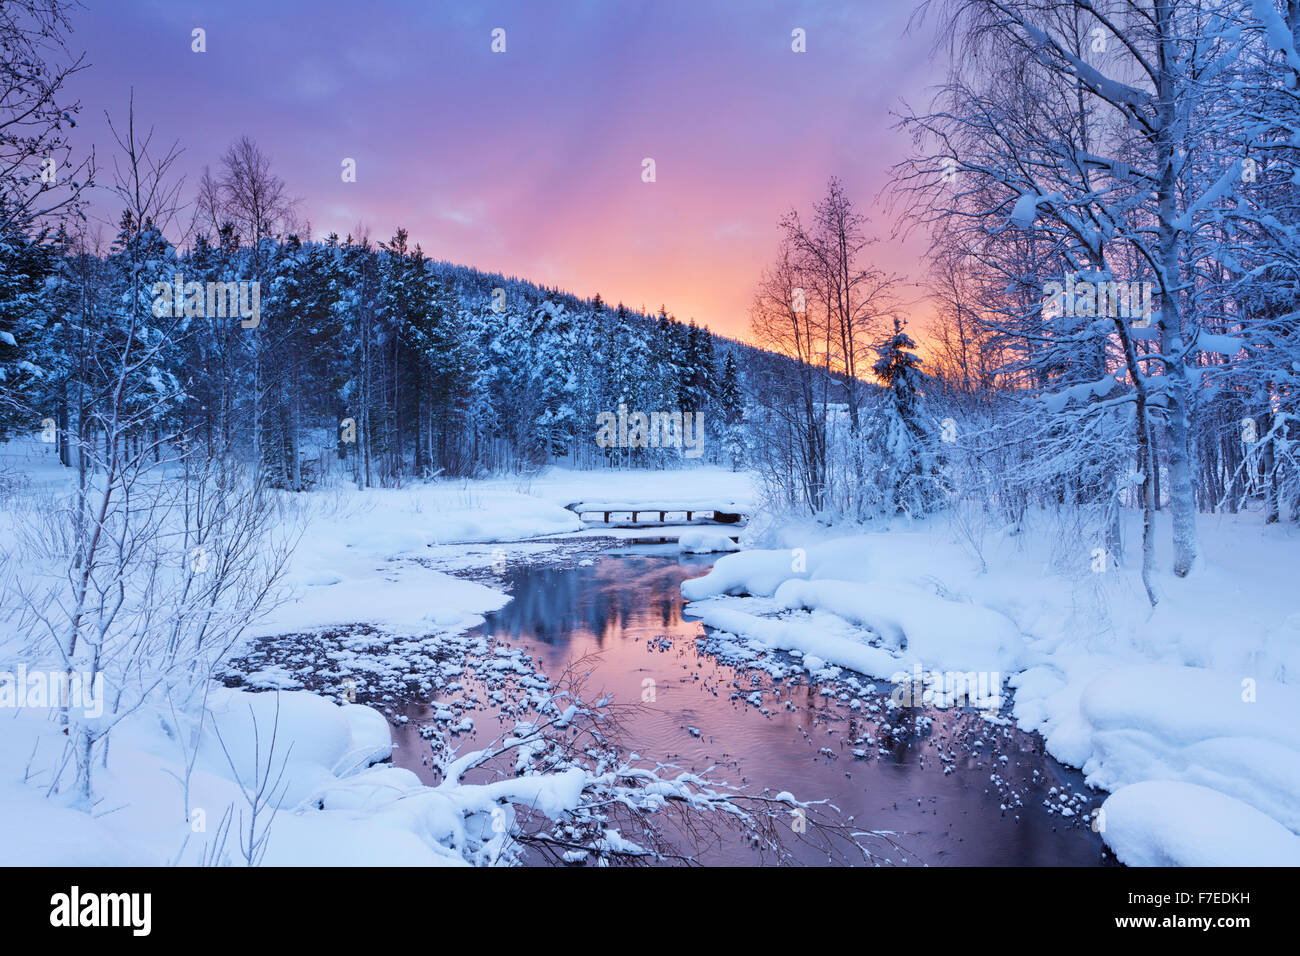 Une rivière gelée dans un paysage hivernal. Photographiée près de Levi en Laponie finlandaise au lever du soleil. Banque D'Images